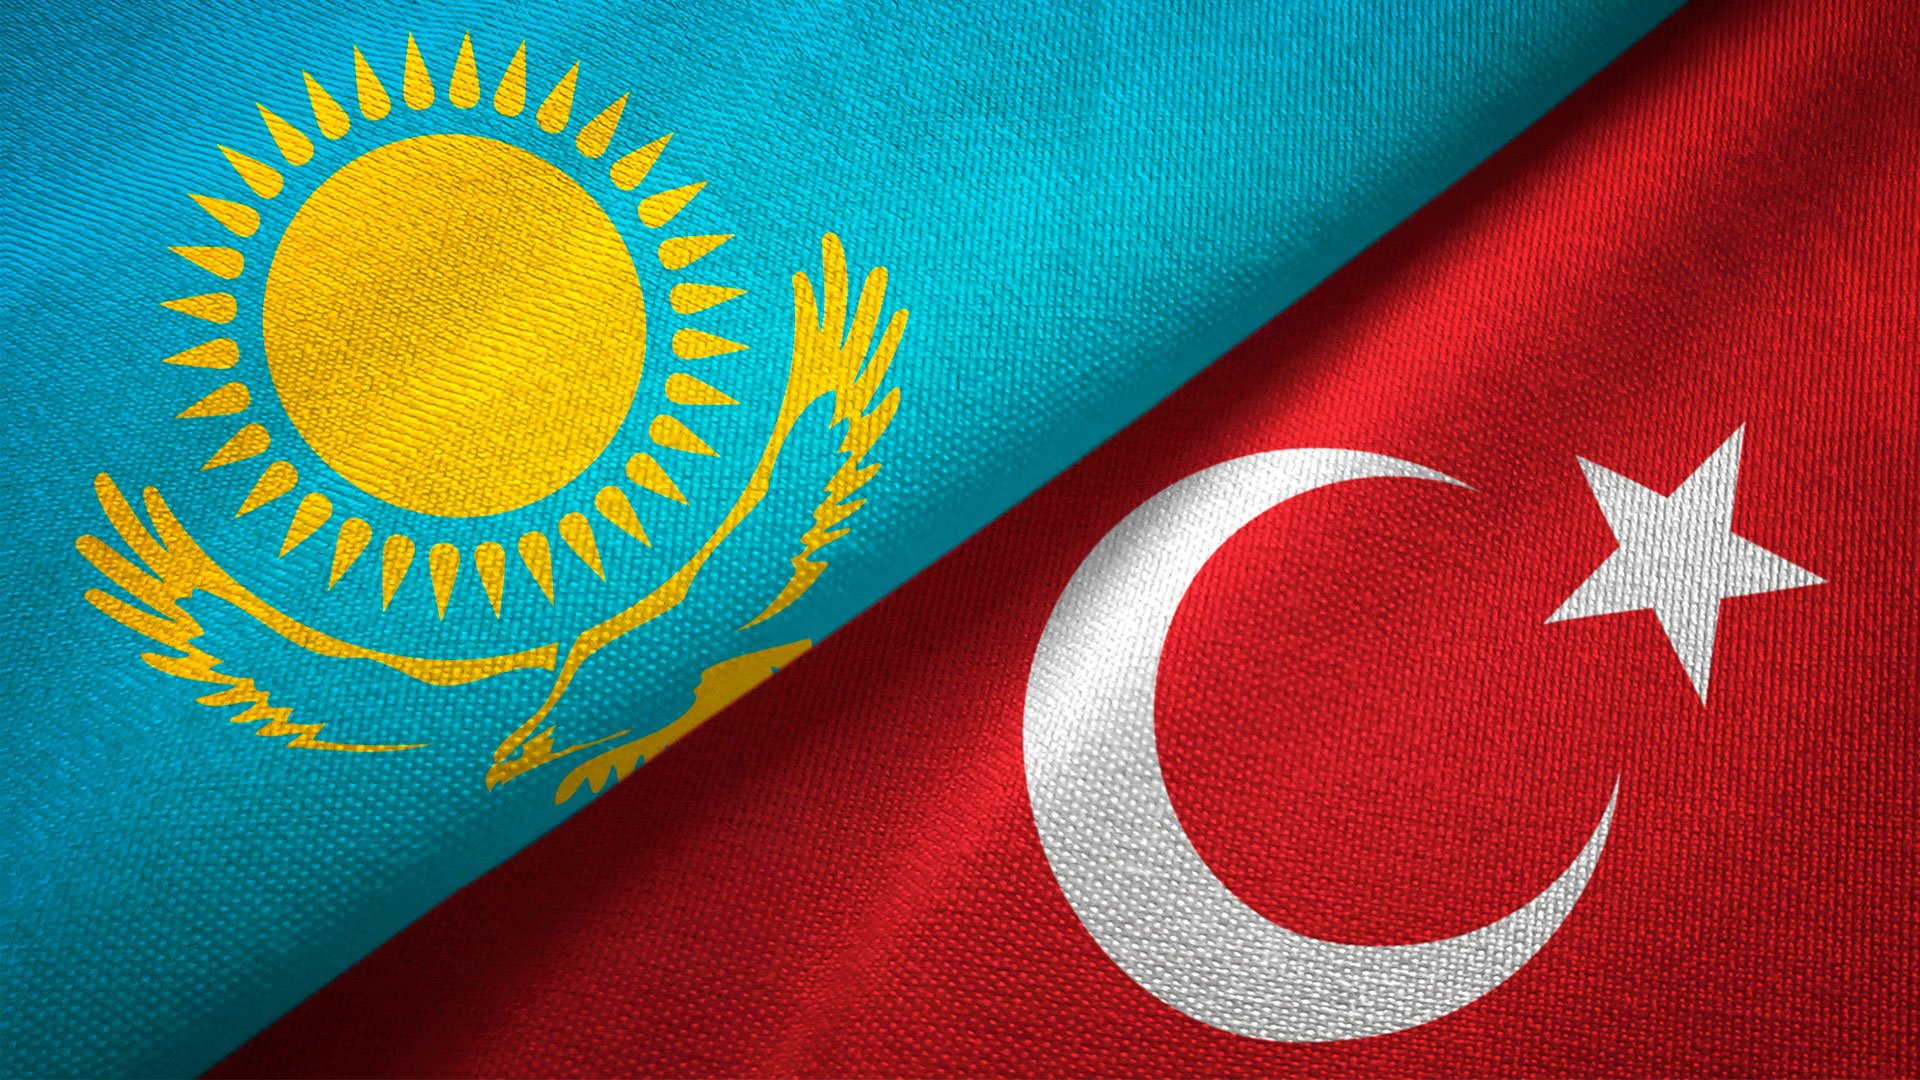 Kazakhstan, Türkiye eye cooperation in space programs